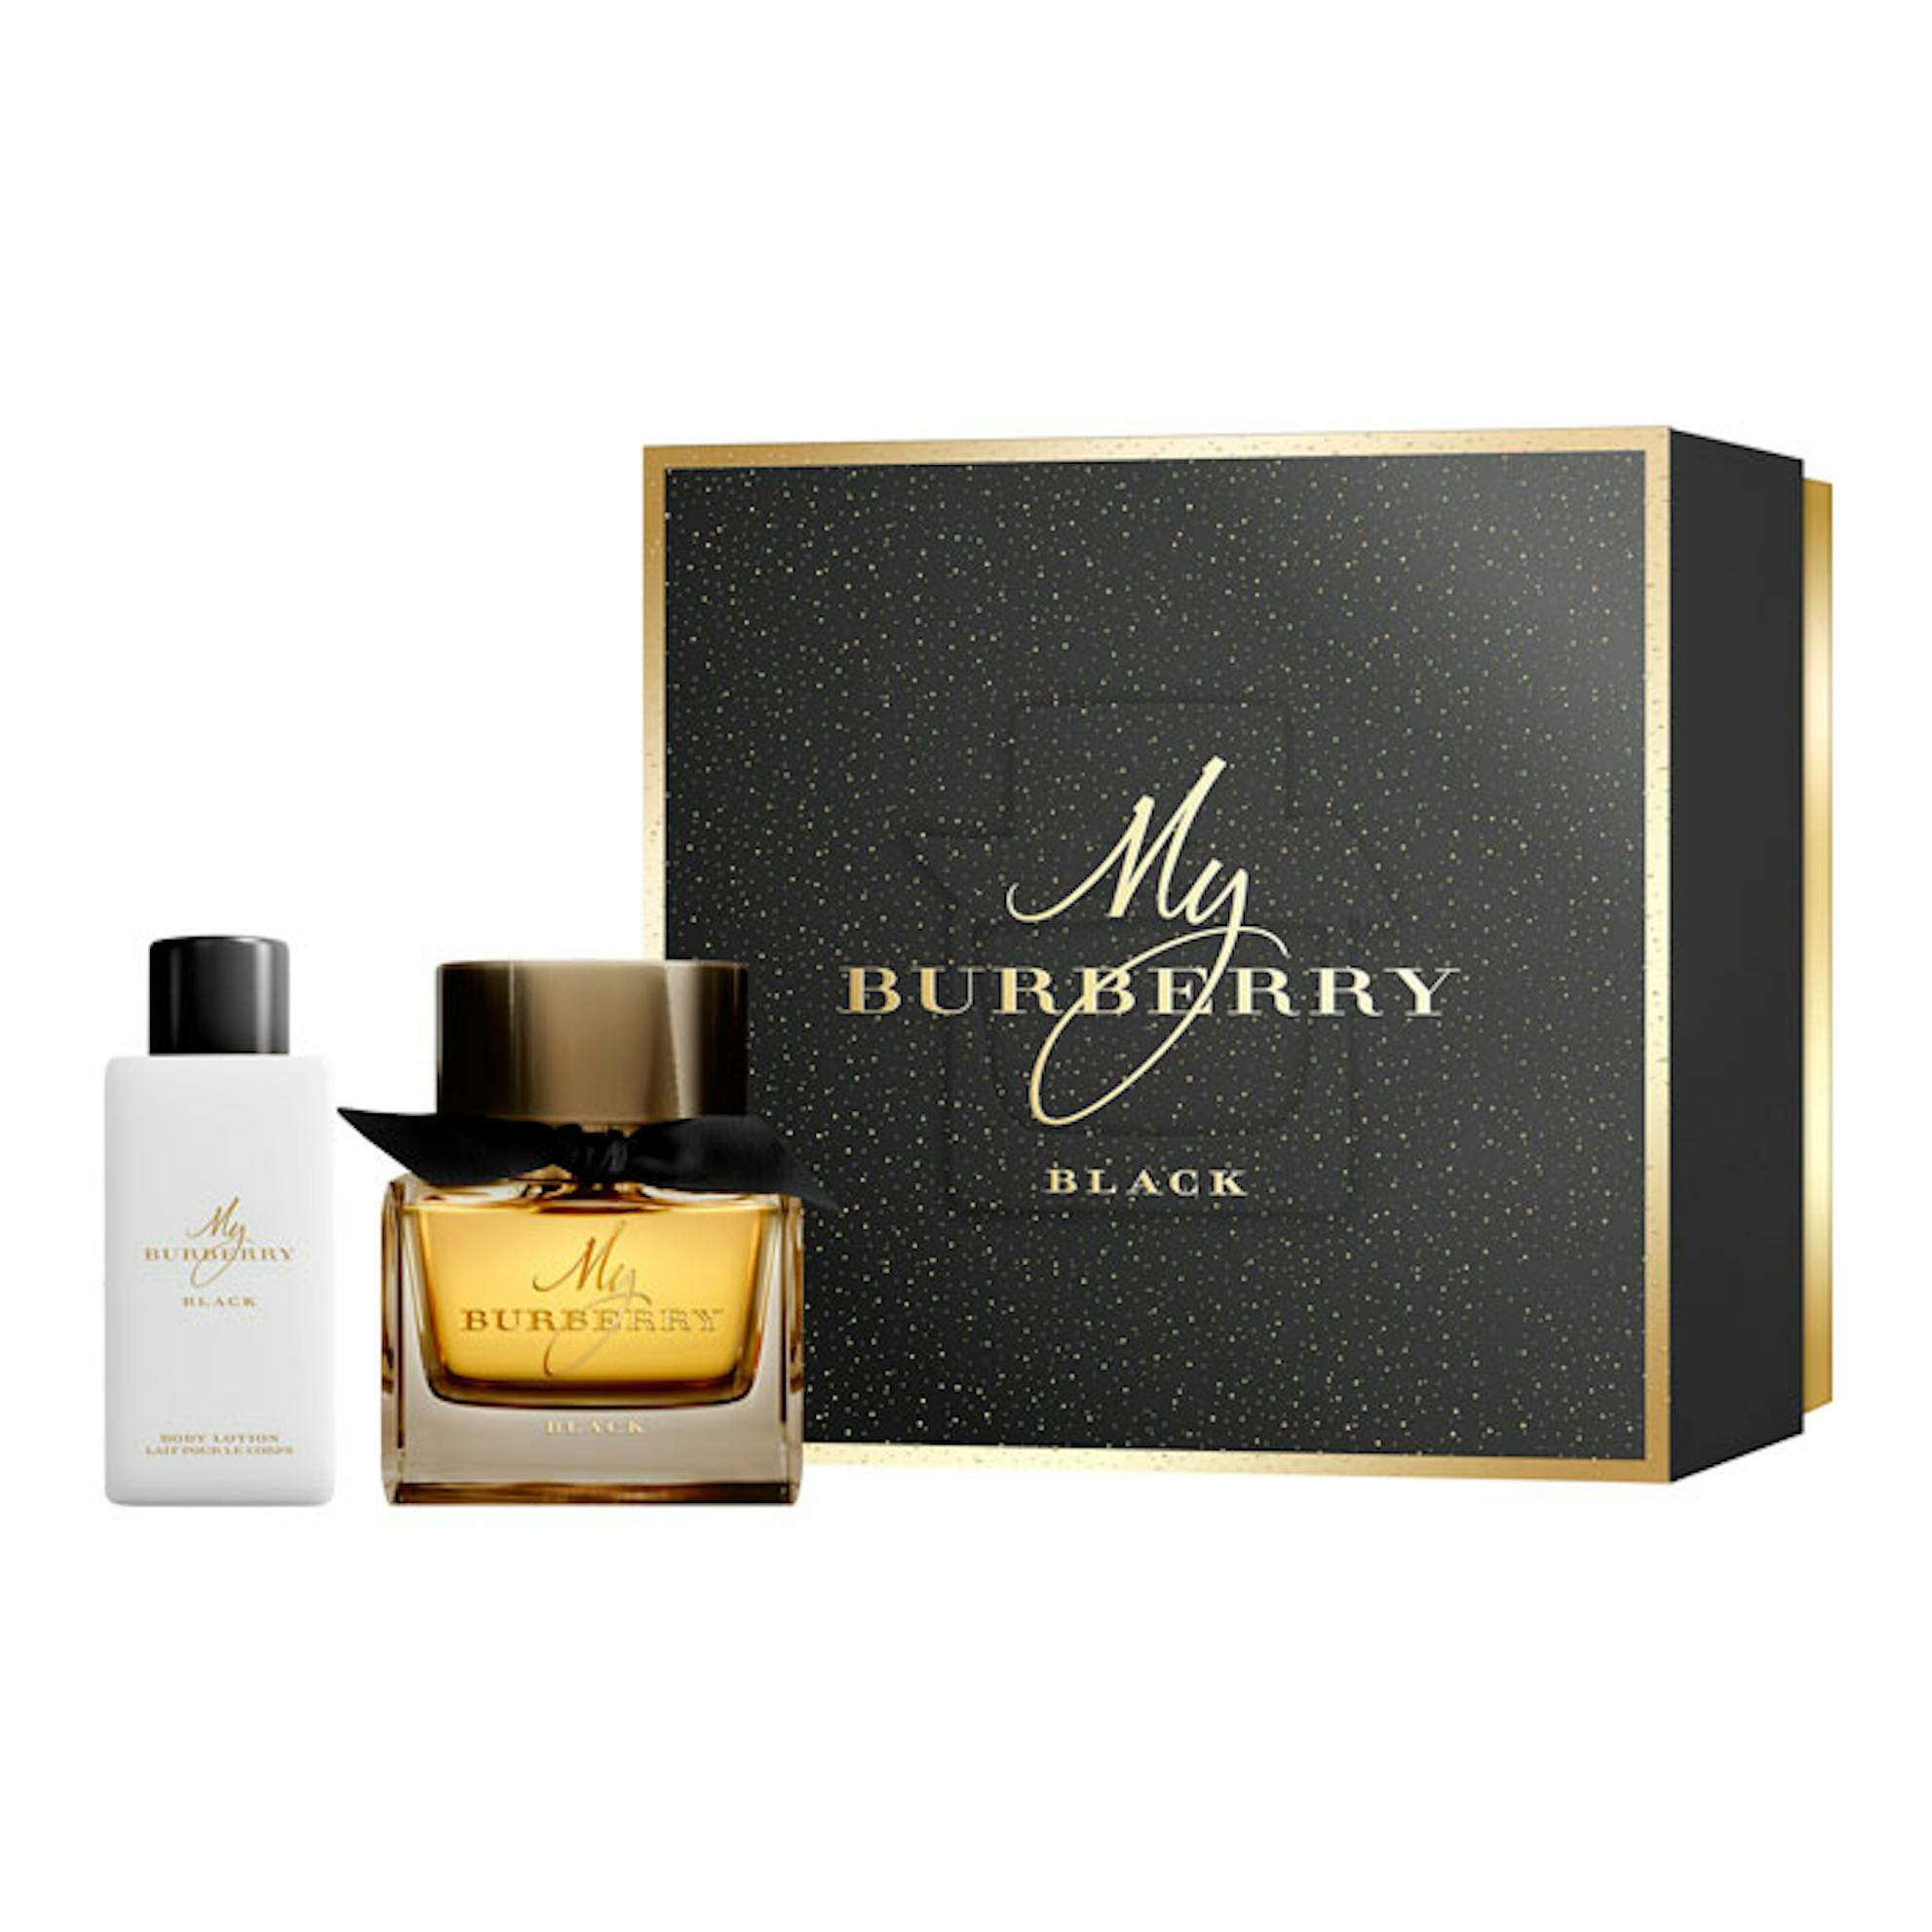 Burberry Eau De Toilette 50ml Gift Set | The Fragrance Shop